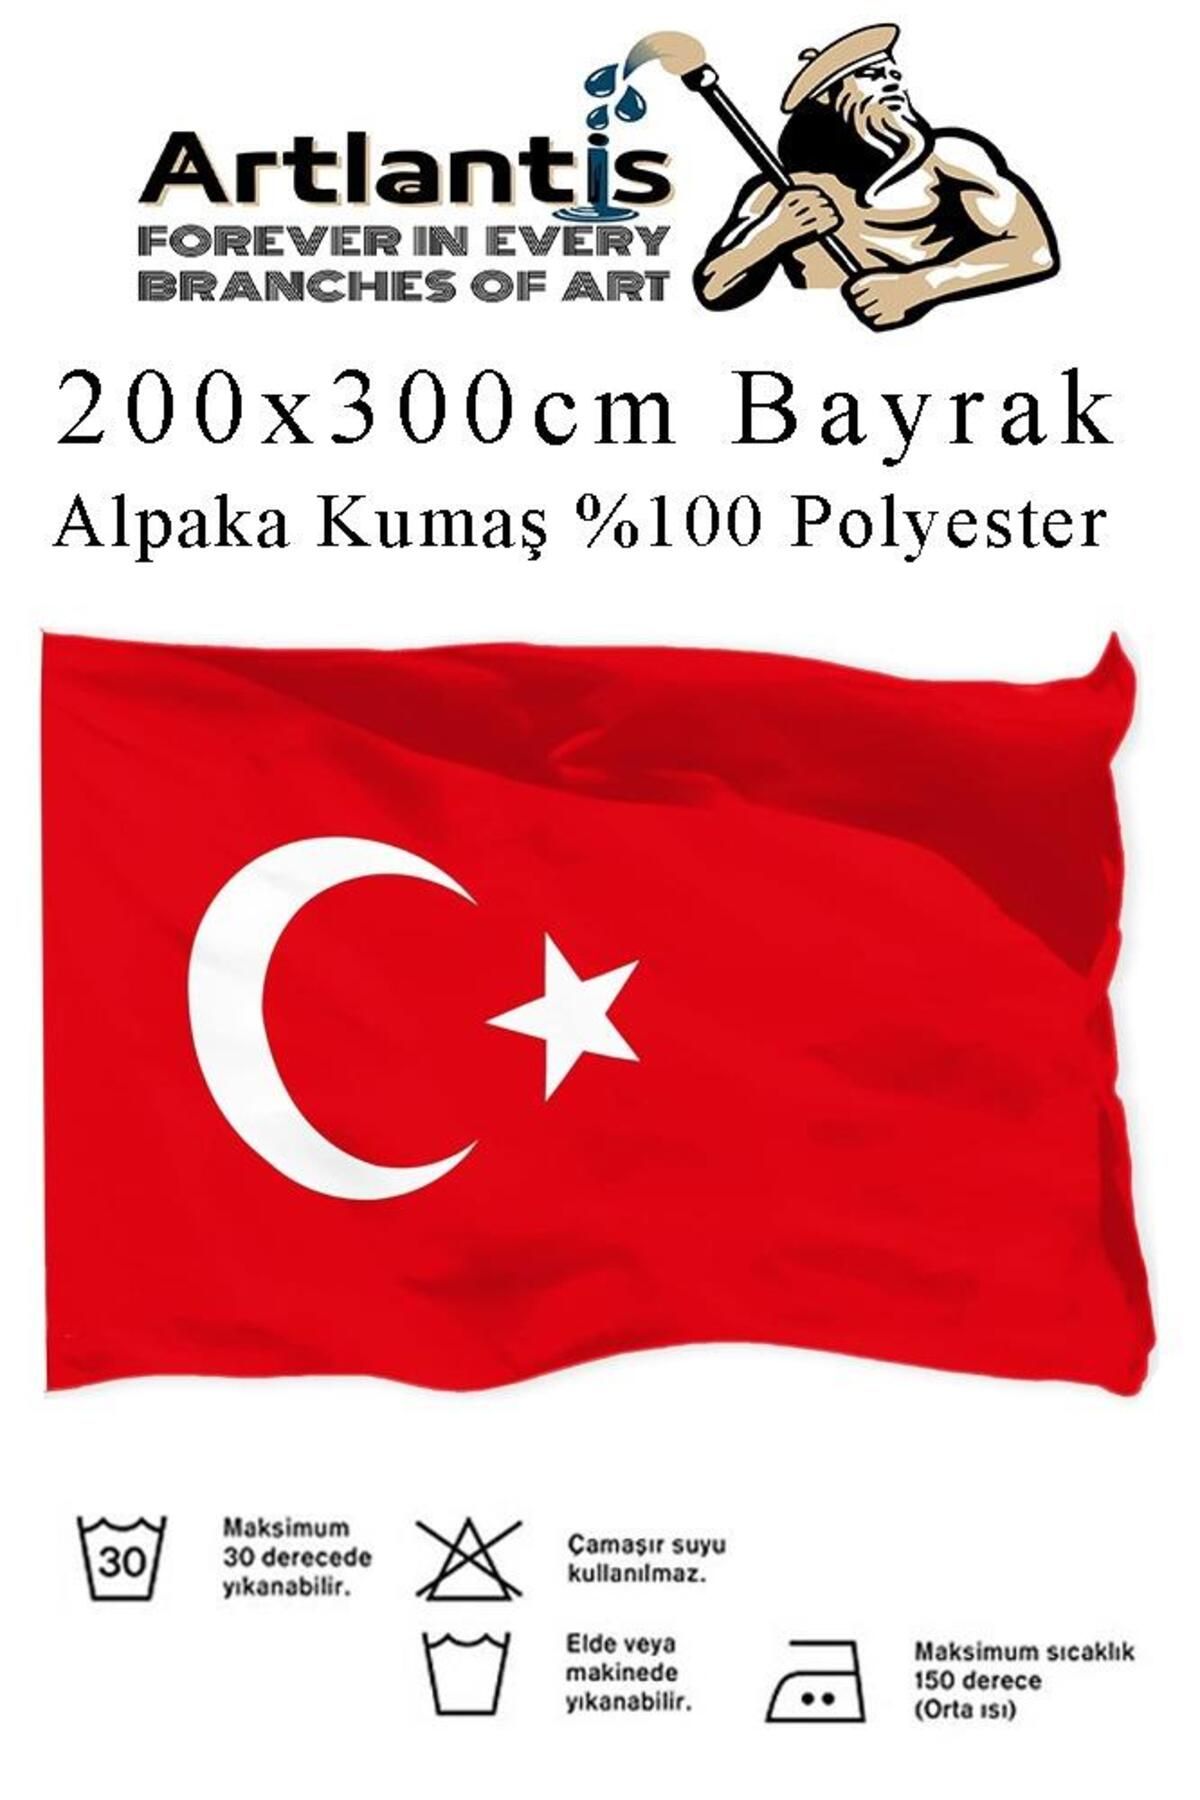 Artlantis Bayrak 200x300 cm Türk Bayrağı Kumaş 1 Adet Alpaka Kumaş Bez Bayrak Kaliteli Türk Bayrağı Kırmızı Be